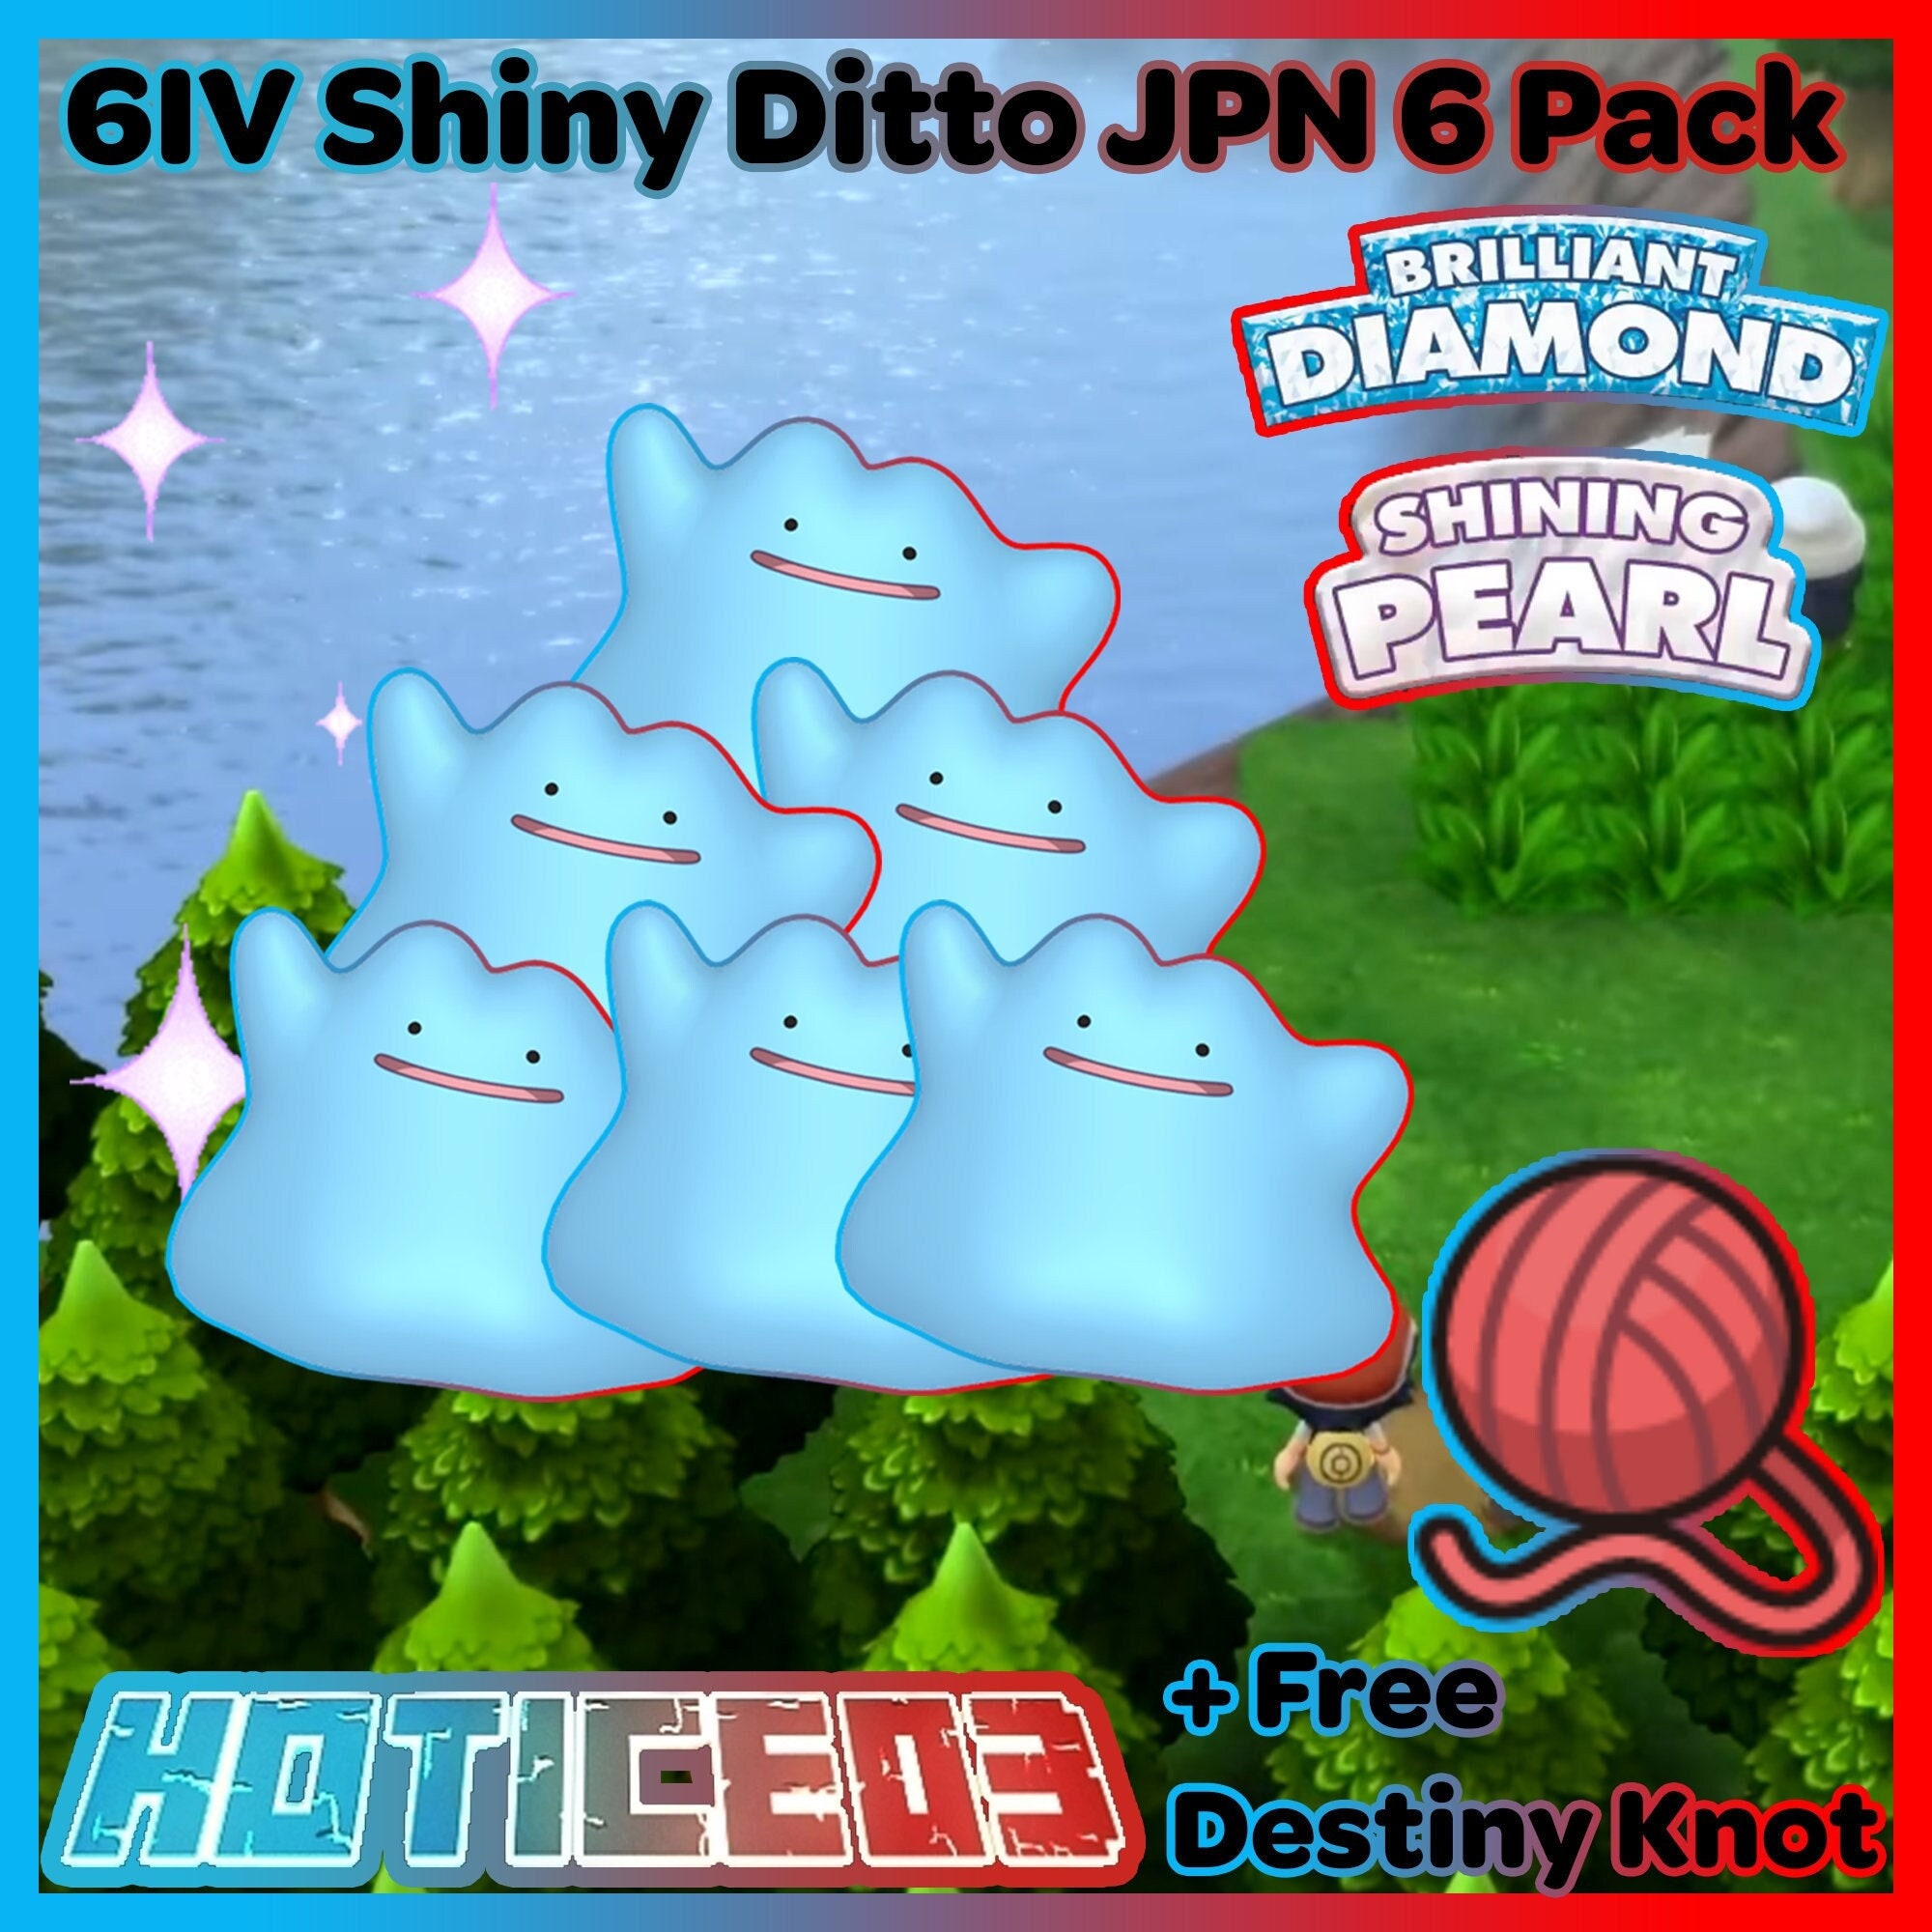 NEW BRILLIANT DIAMOND AND SHINING PEARL 6IV SHINY MASUDA DITTO + DESTINY  KNOT